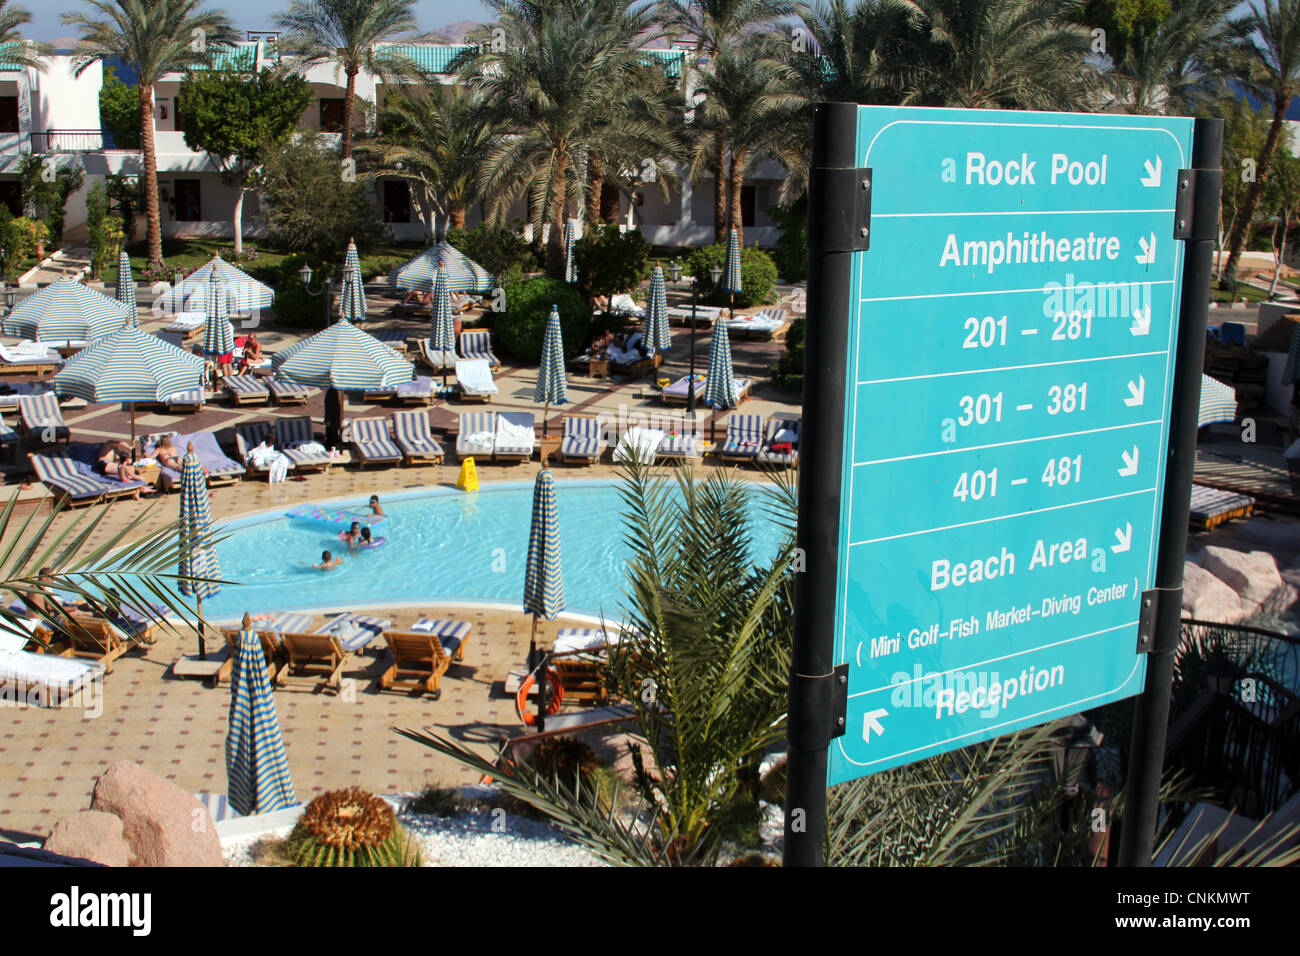 Sultan Gardens Resort in Sharm El Sheikh, Egypt, north Africa. Stock Photo